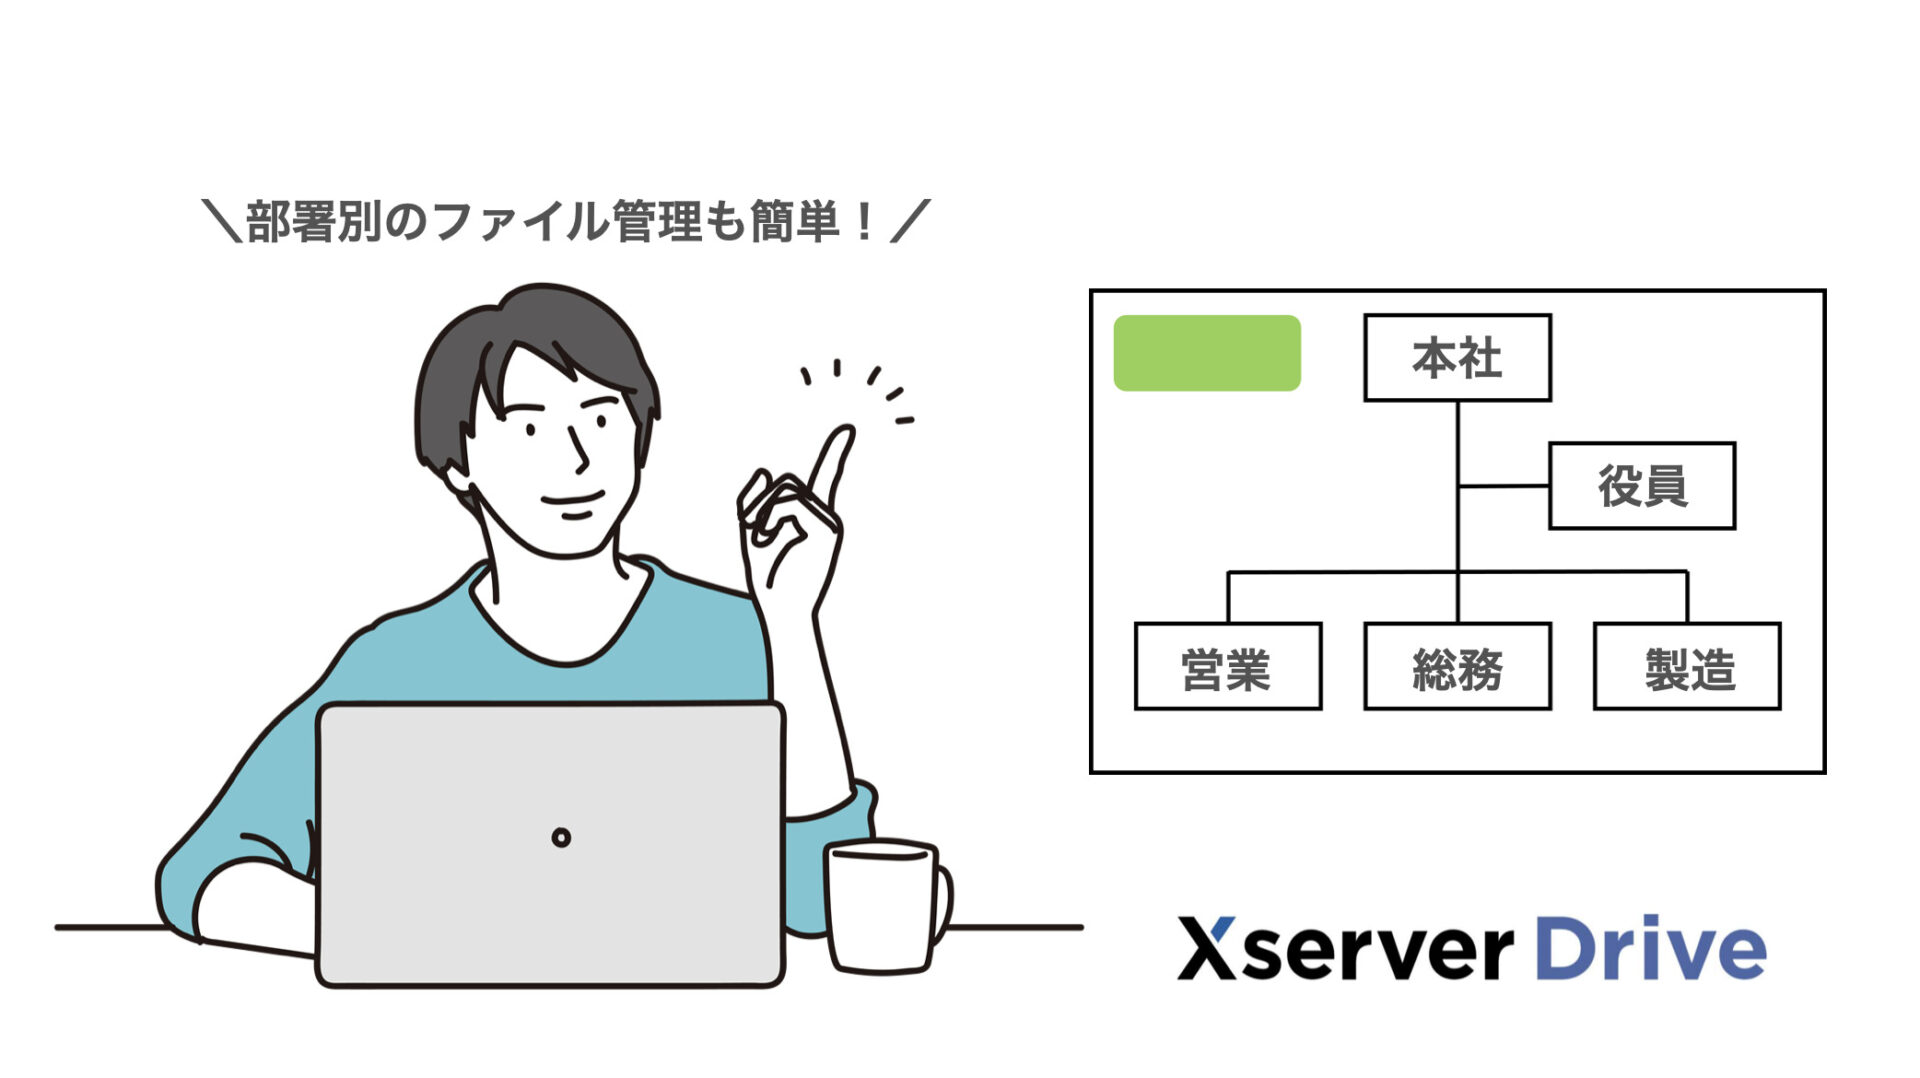 Xserverドライブなら部署別の階層フォルダを作成可能。ファイル権限を作成することも可能です